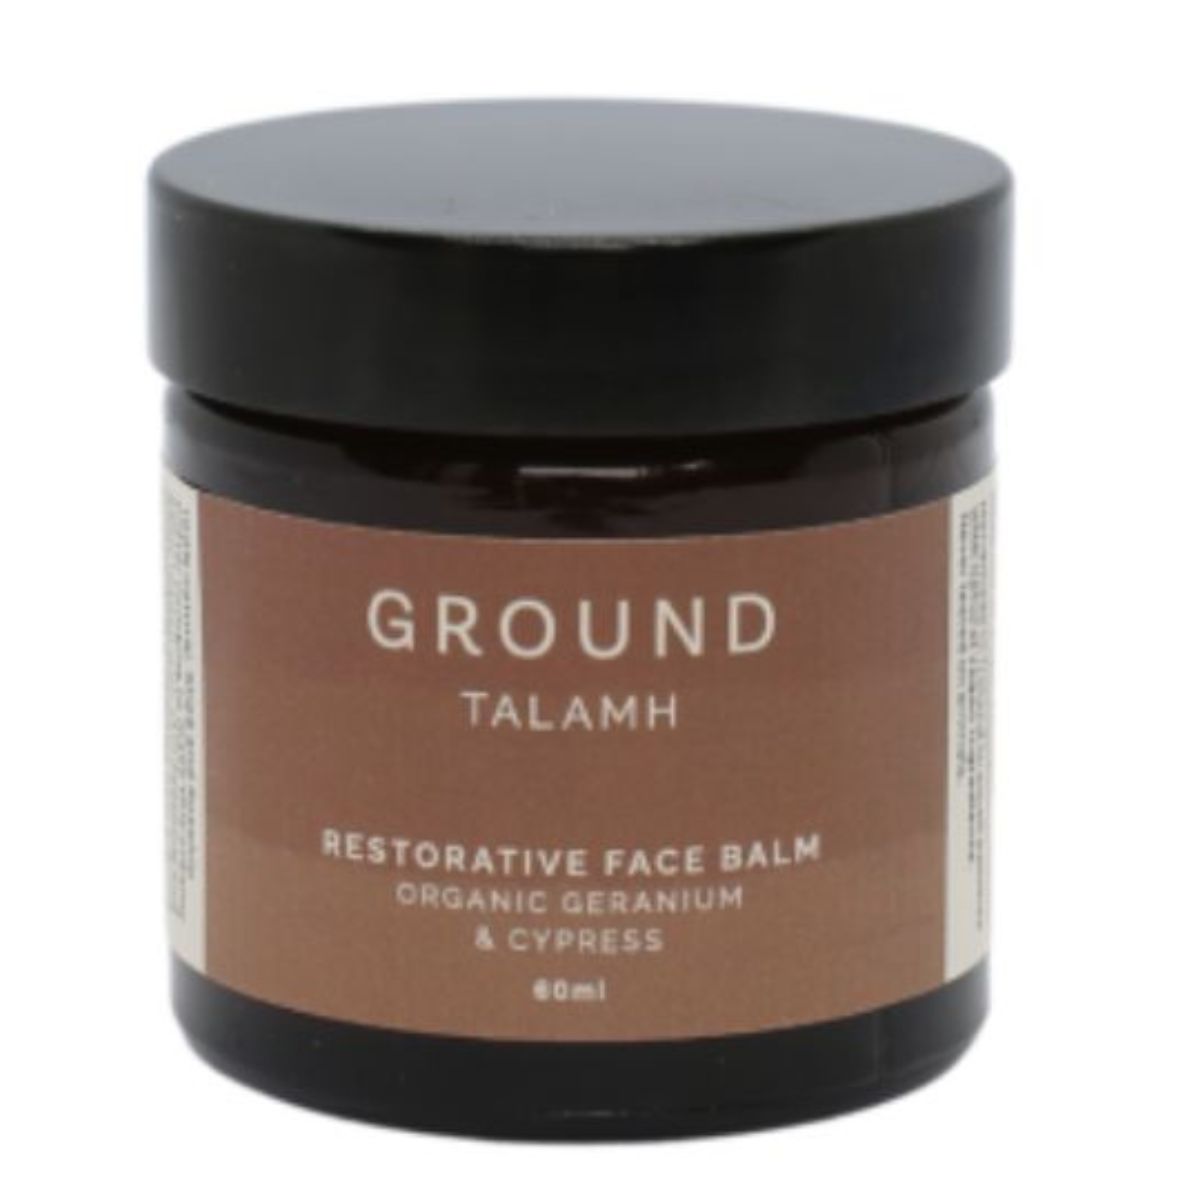 GROUND TALAMH Restorative Face Balm